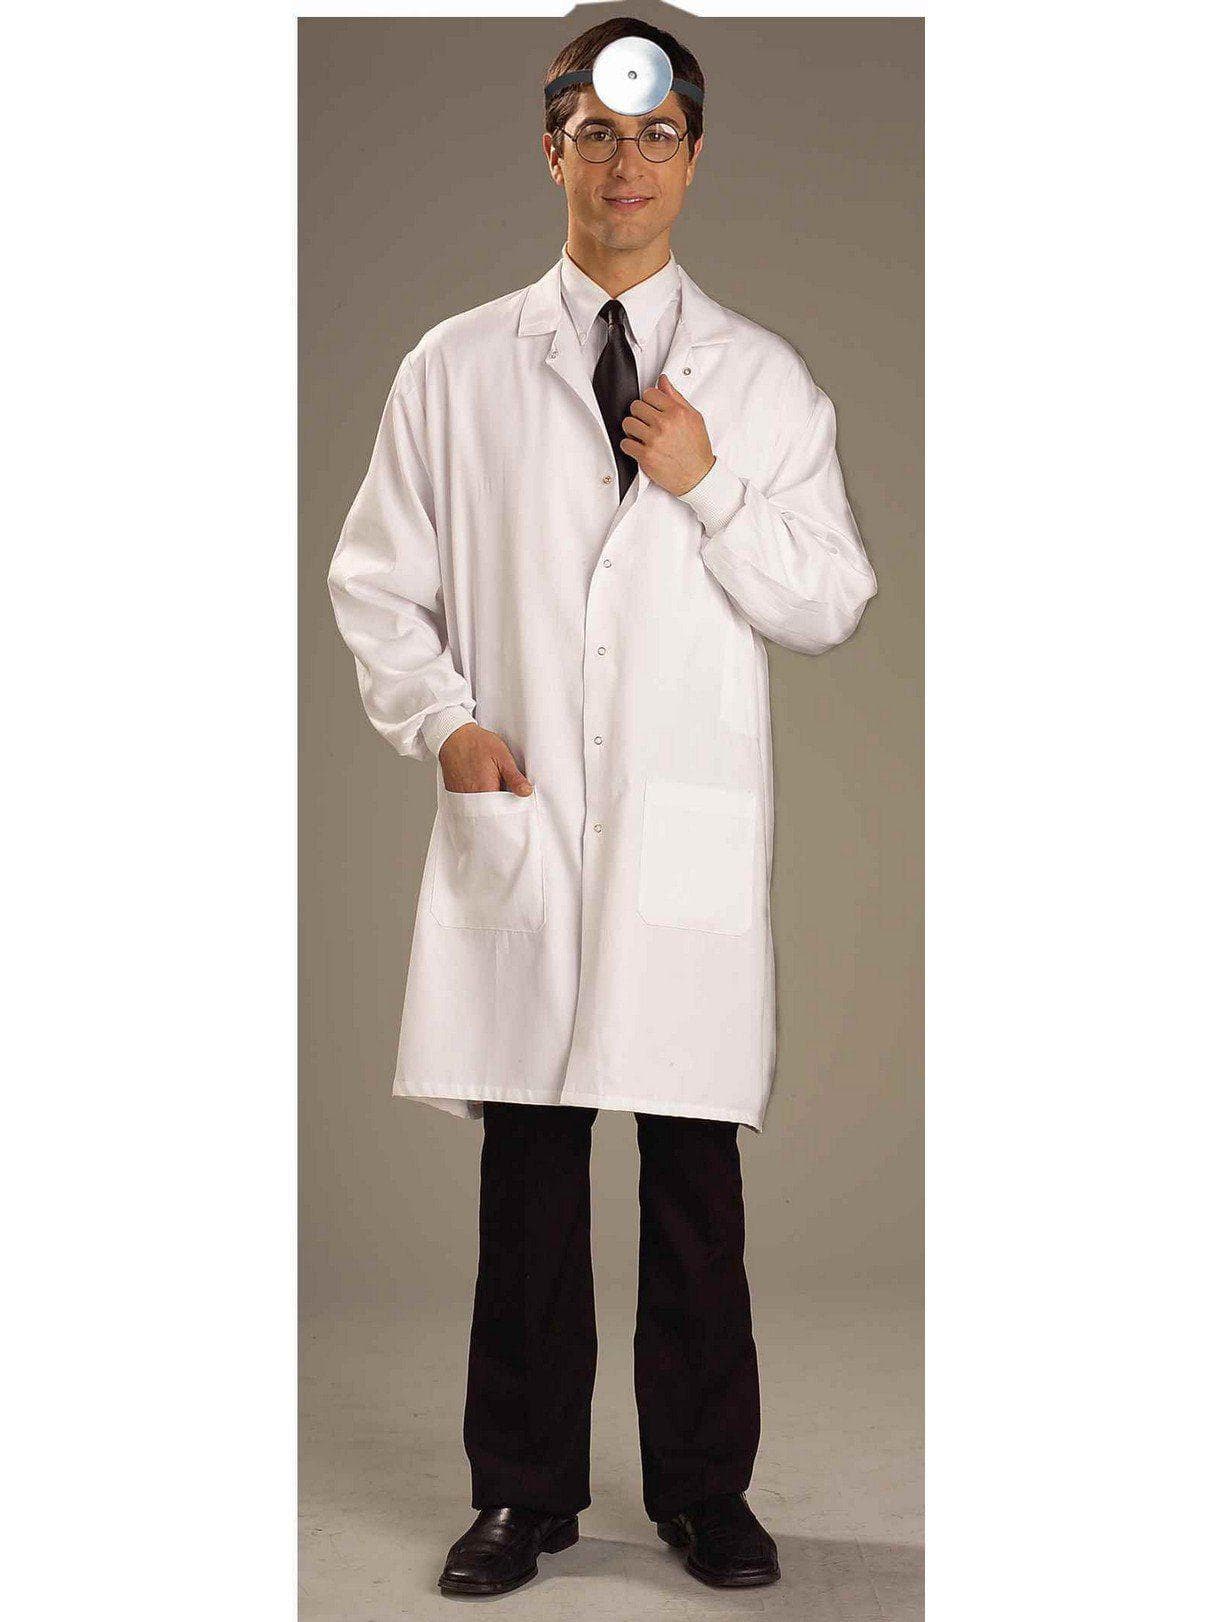 Adult White Lab Coat - costumes.com